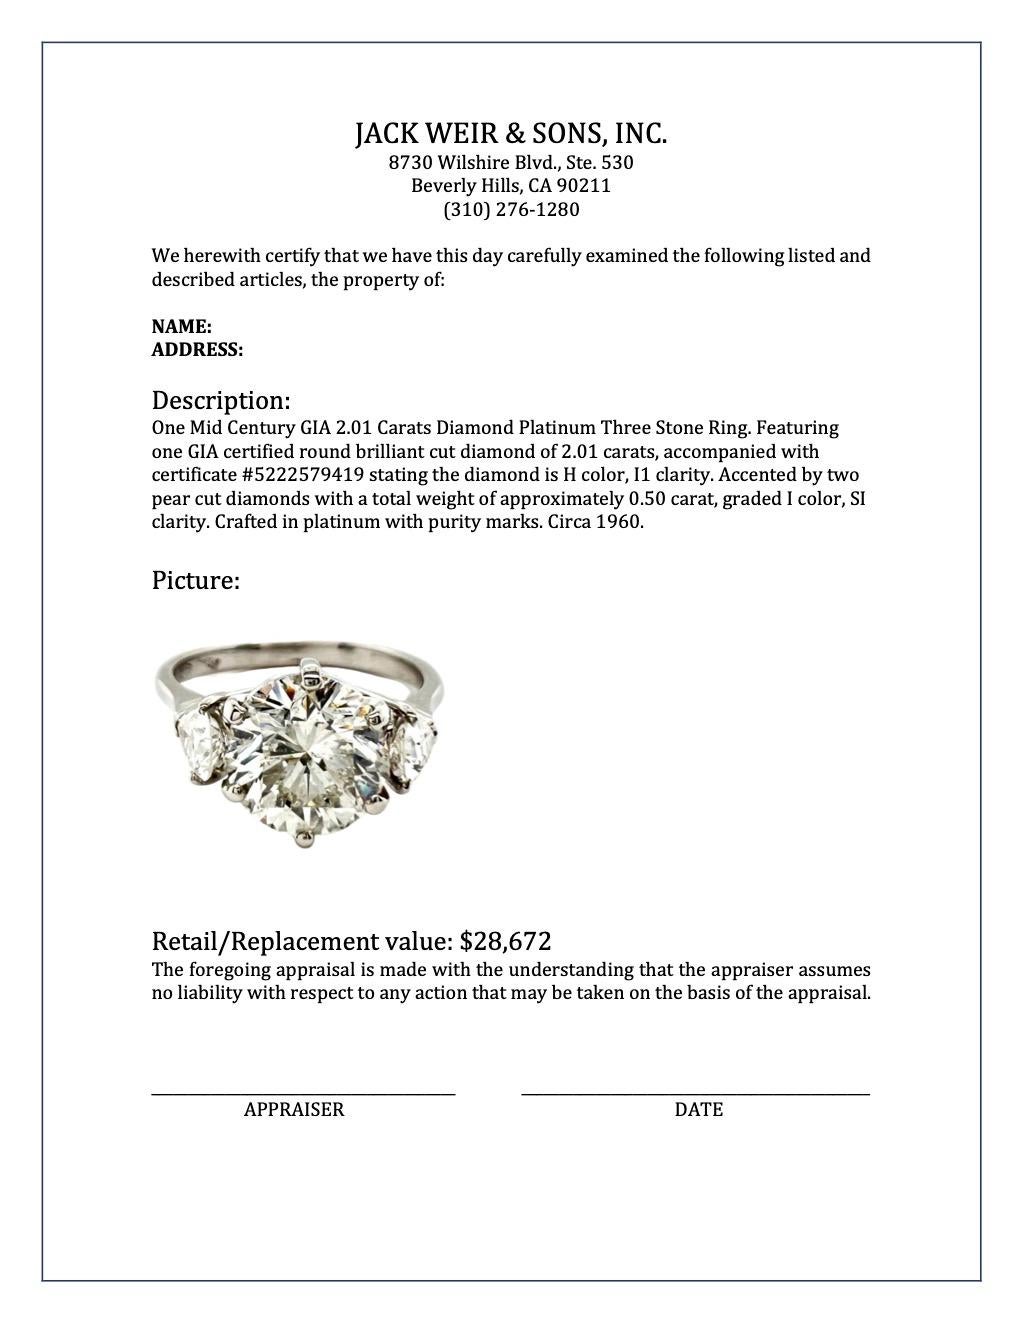 Mid Century GIA 2.01 Carat Round Brilliant Cut Diamond Platinum Three Stone Ring 2